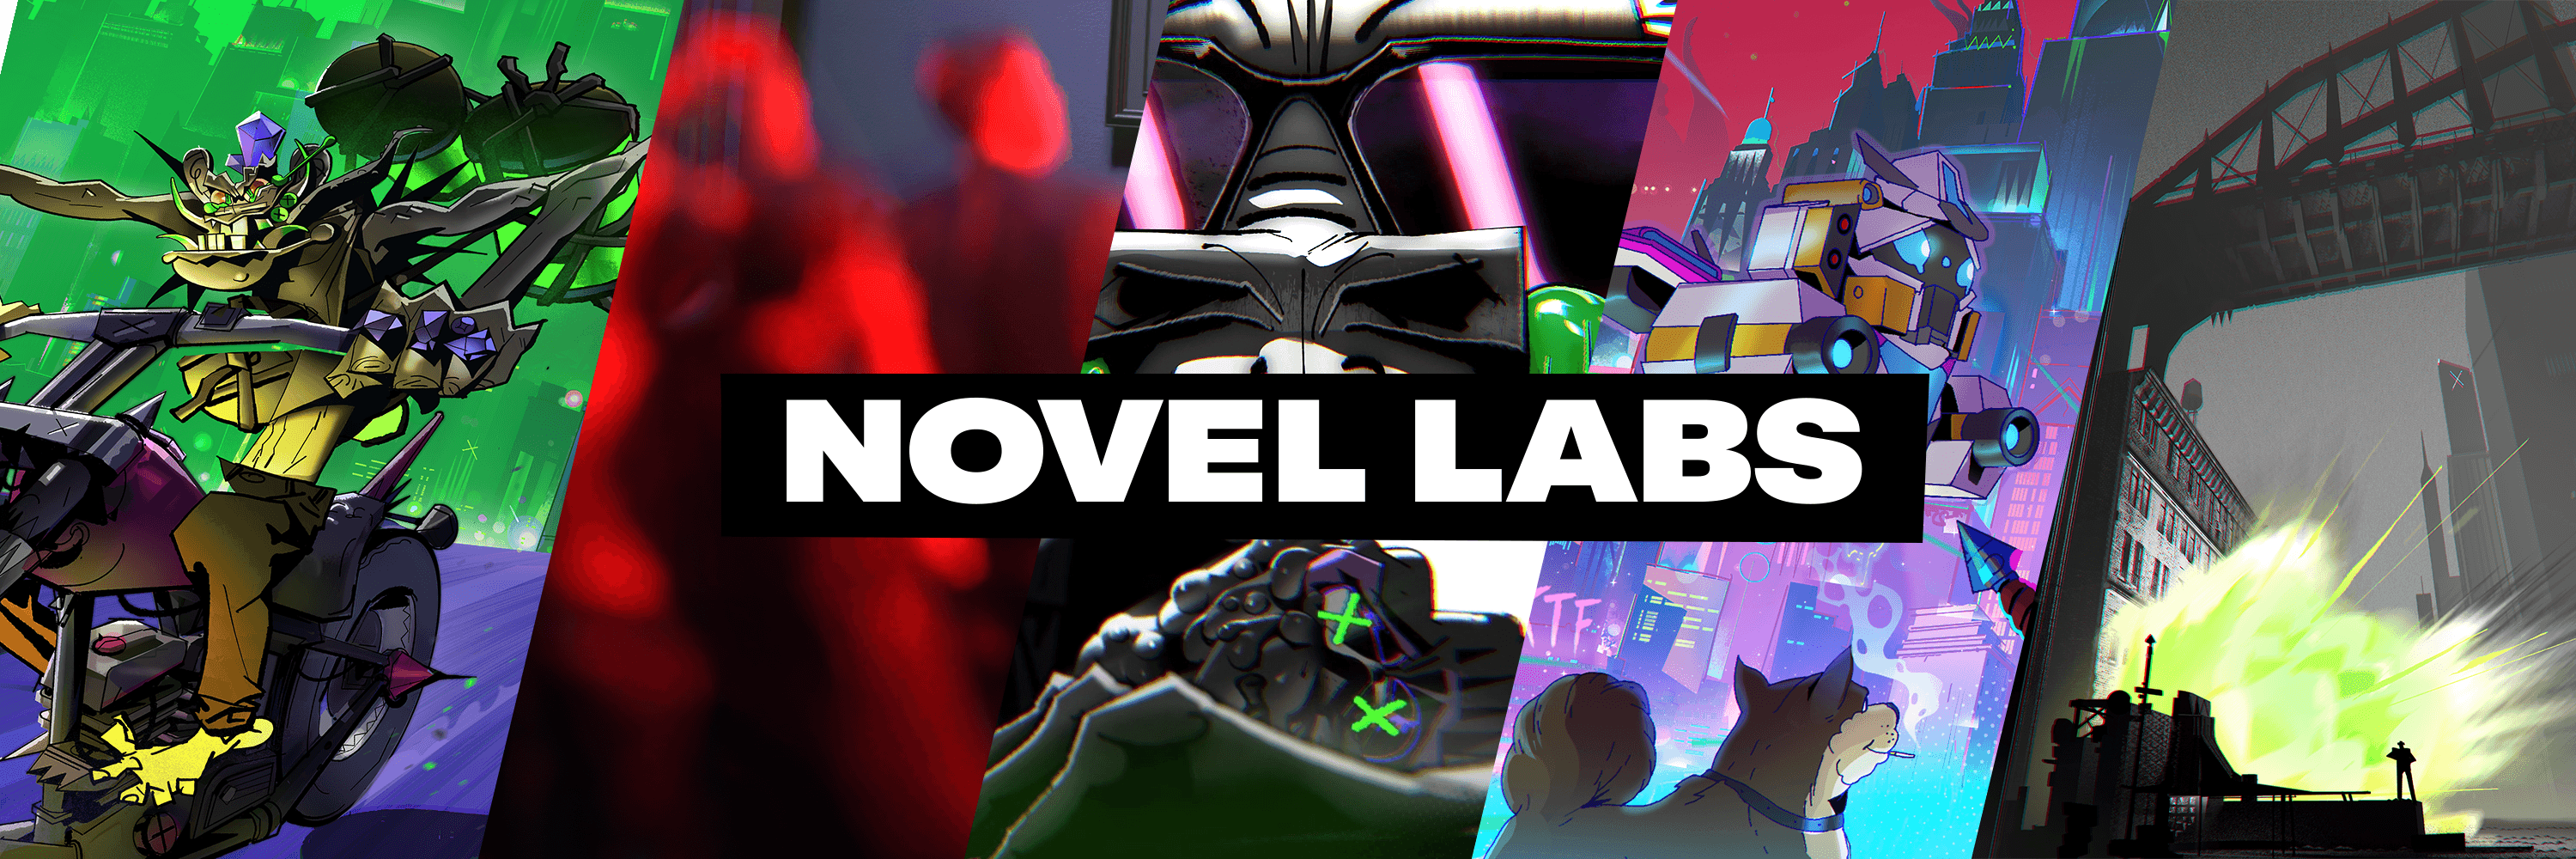 Novel_Labs bannière